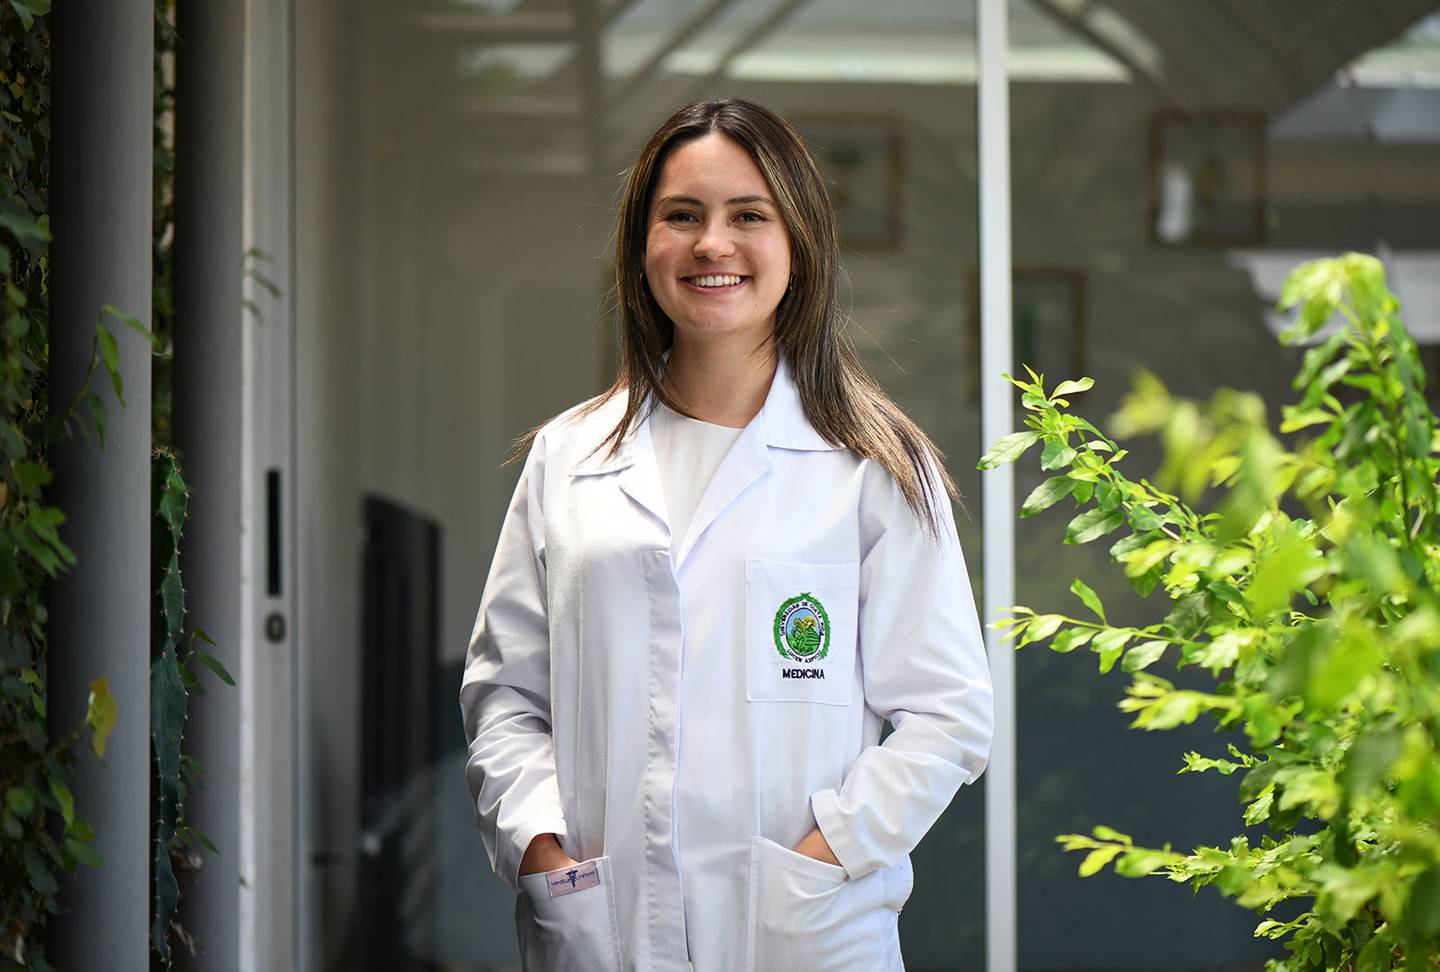 La doctora Génesis Soto Chaves, quien con 25 años ya es médica general graduada de la Escuela de Medicina de la Universidad de Costa Rica